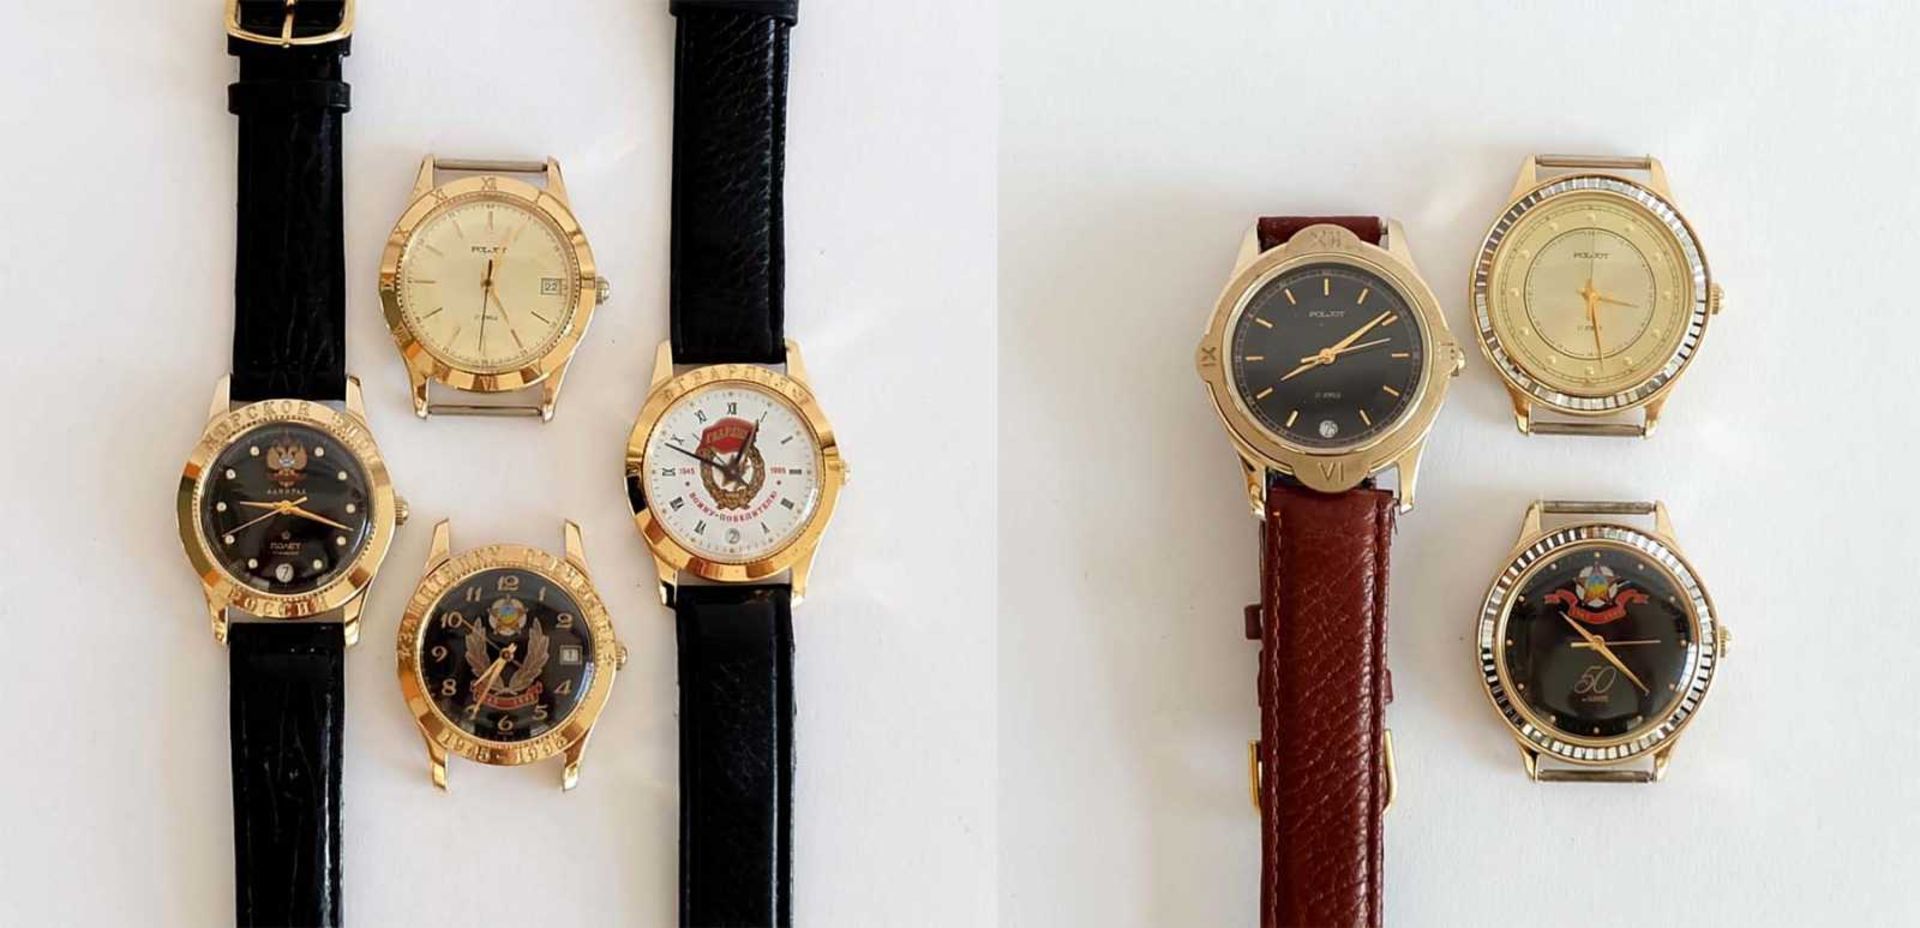 HAU, Konvolut von 7, Herst. Erste Moskauer Uhrenfabrik, Marke Poljot, Handaufzug, 17 Steine, Lunette